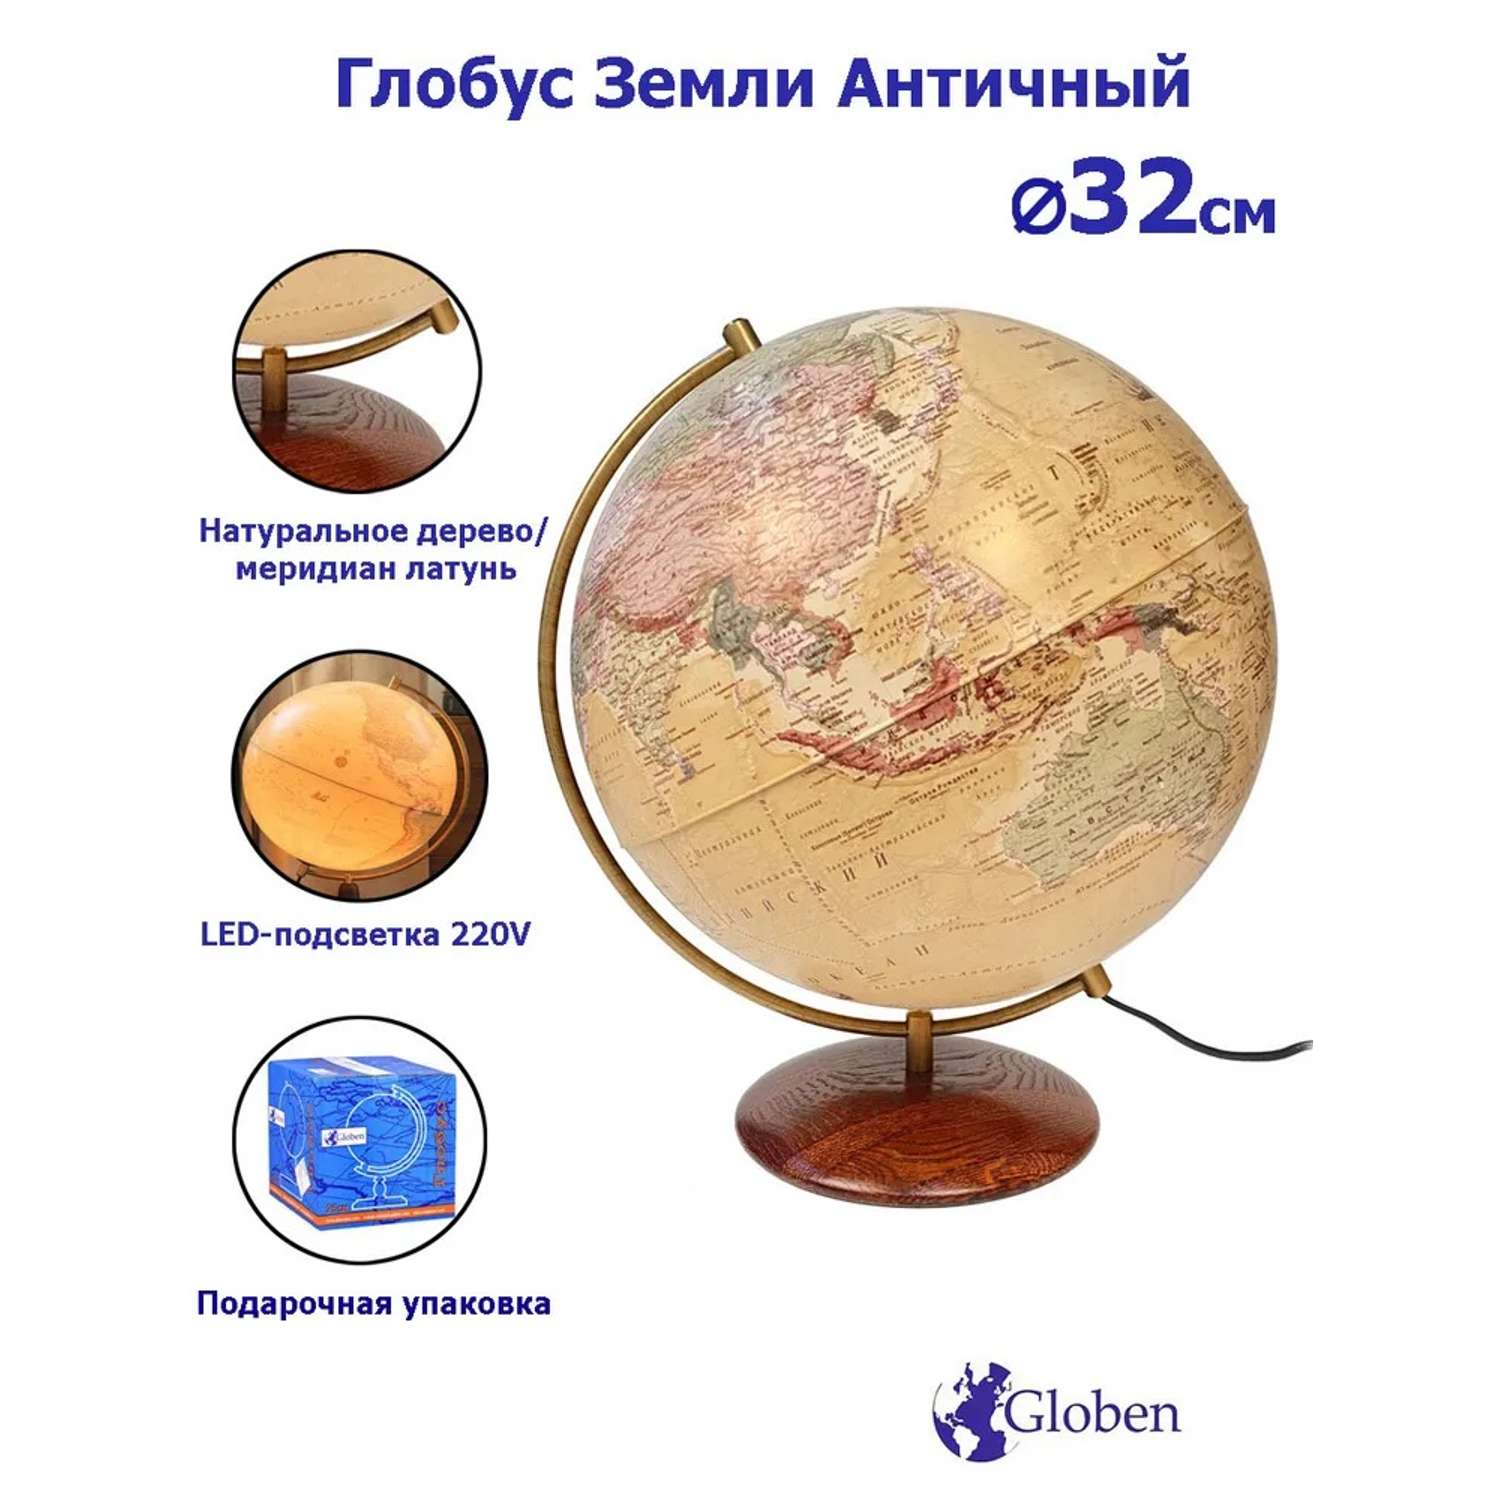 Глобус Globen Антик на подставке из натурального дерева с подсветкой 32 см - фото 2